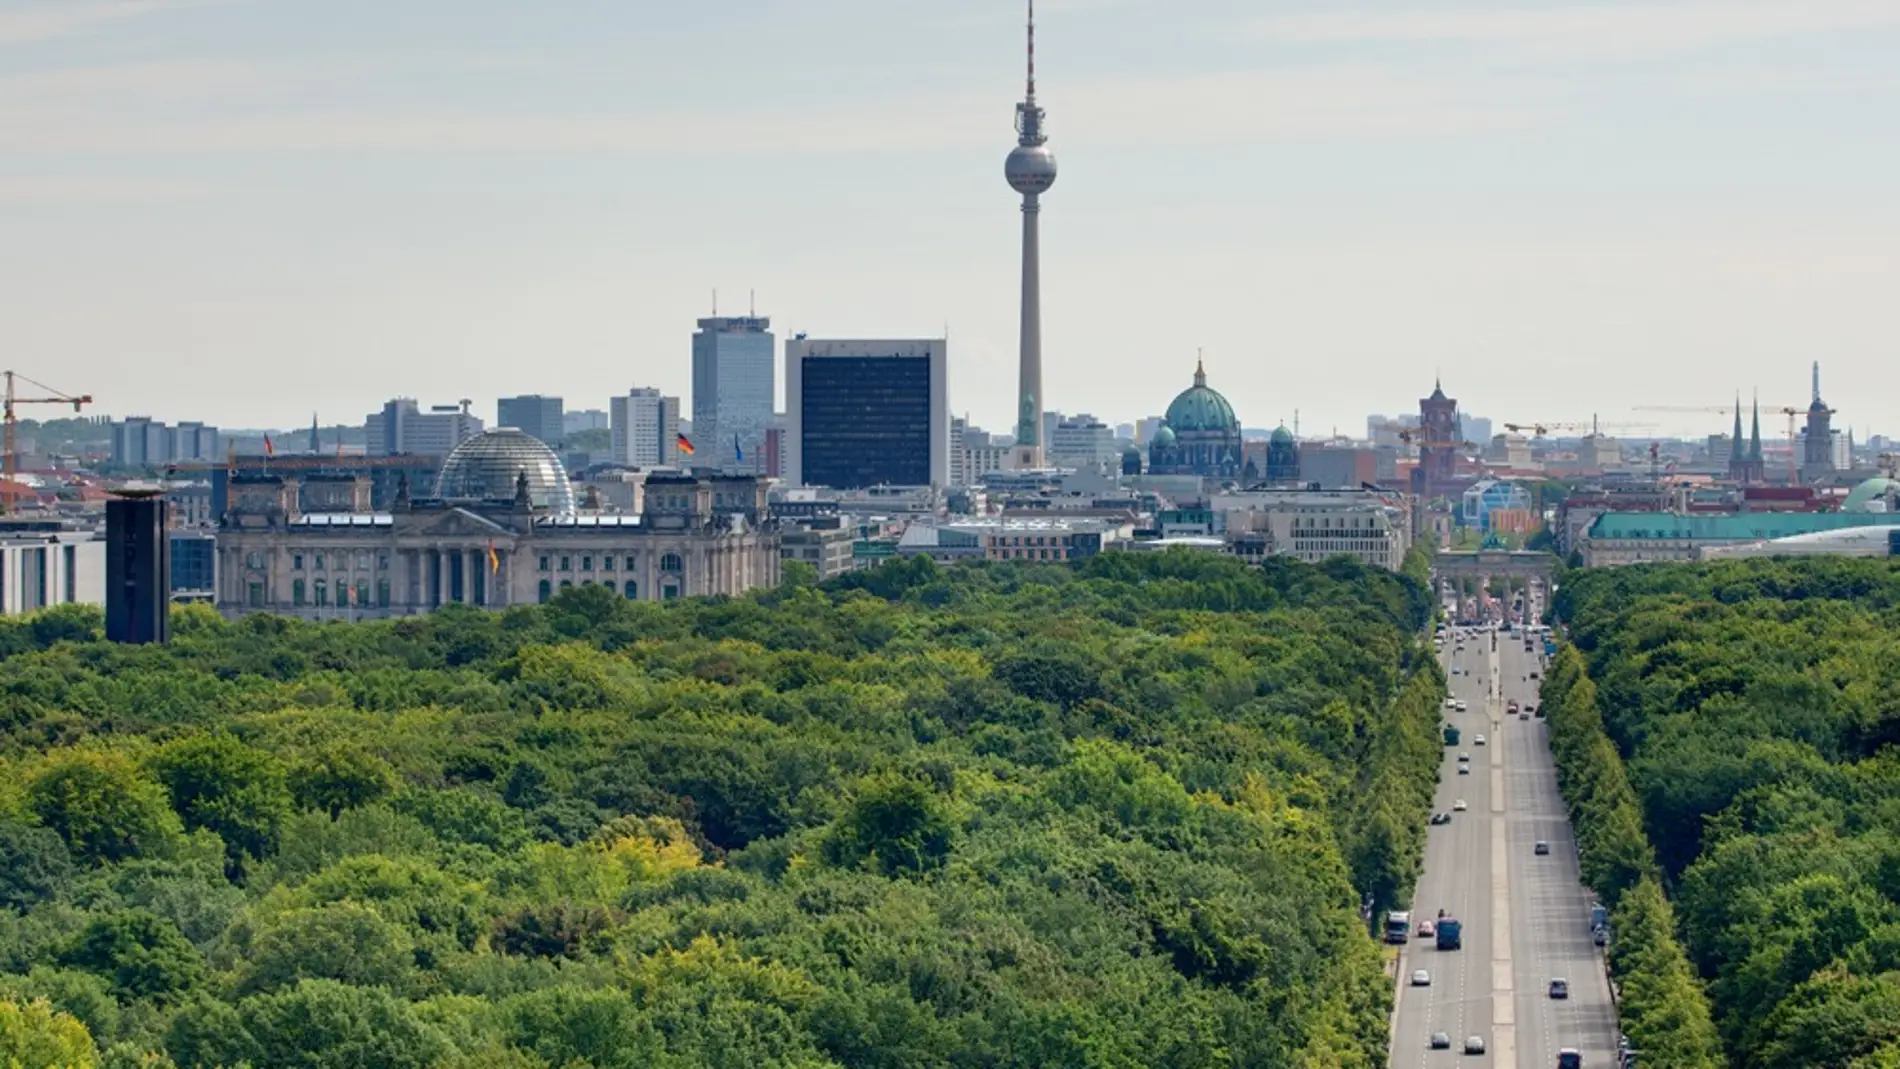 Vista desde la Siegessäule al Tiergarten y al centro de la ciudad Dirección torre de televisión